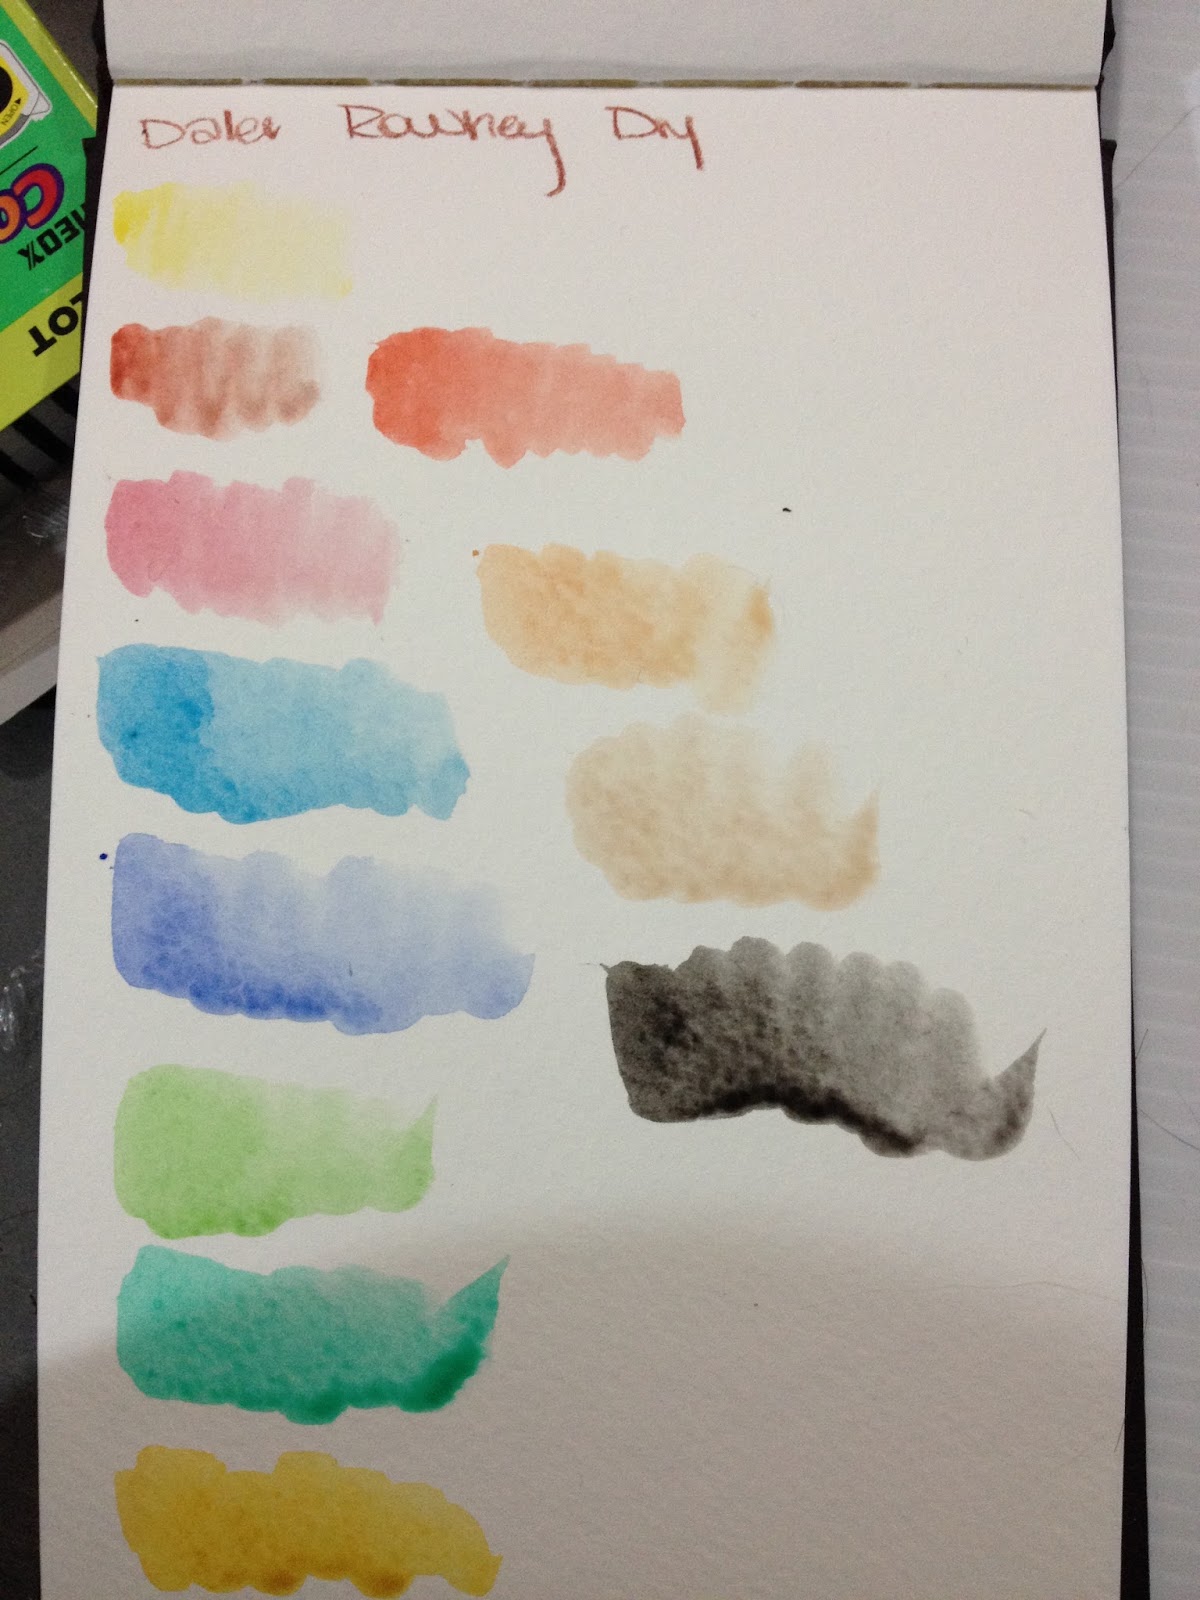 Daler-Rowney Simply Watercolor Paint Tube Set, 12 ml / 0.4 fl. oz., 24 Piece